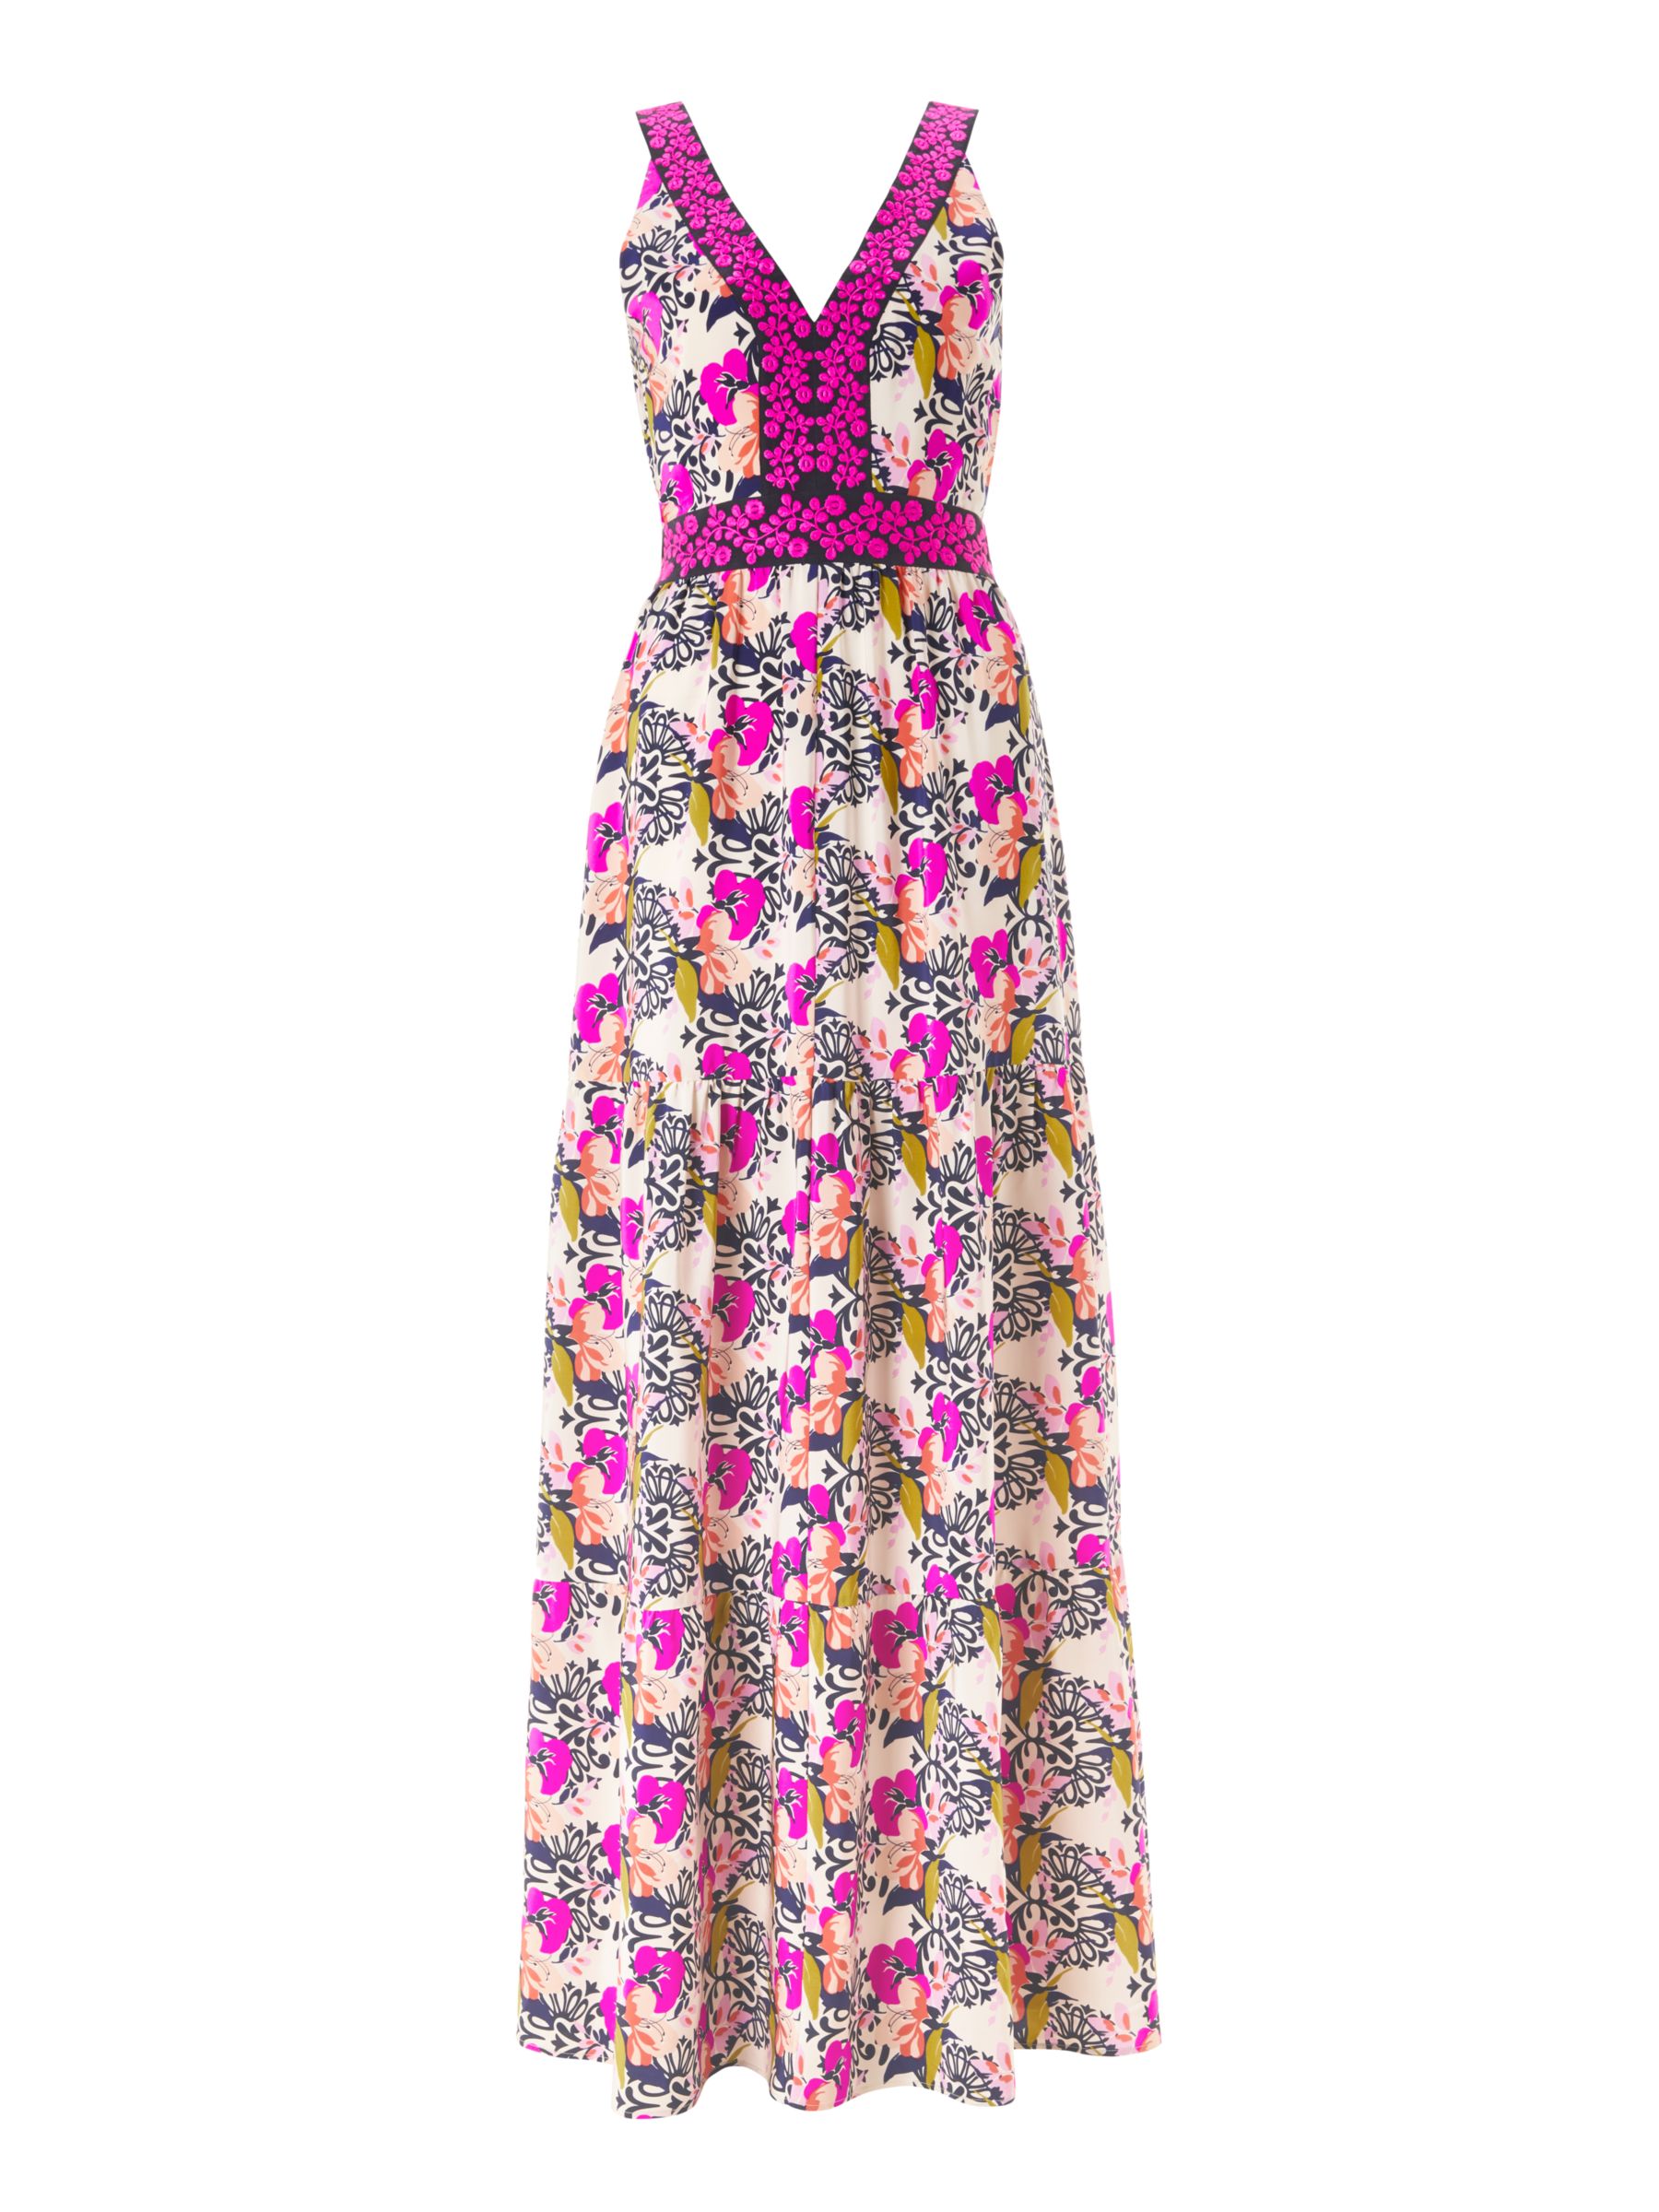 Boden Loretta Maxi Dress, Shocking Pink/Wild Bloom Geo